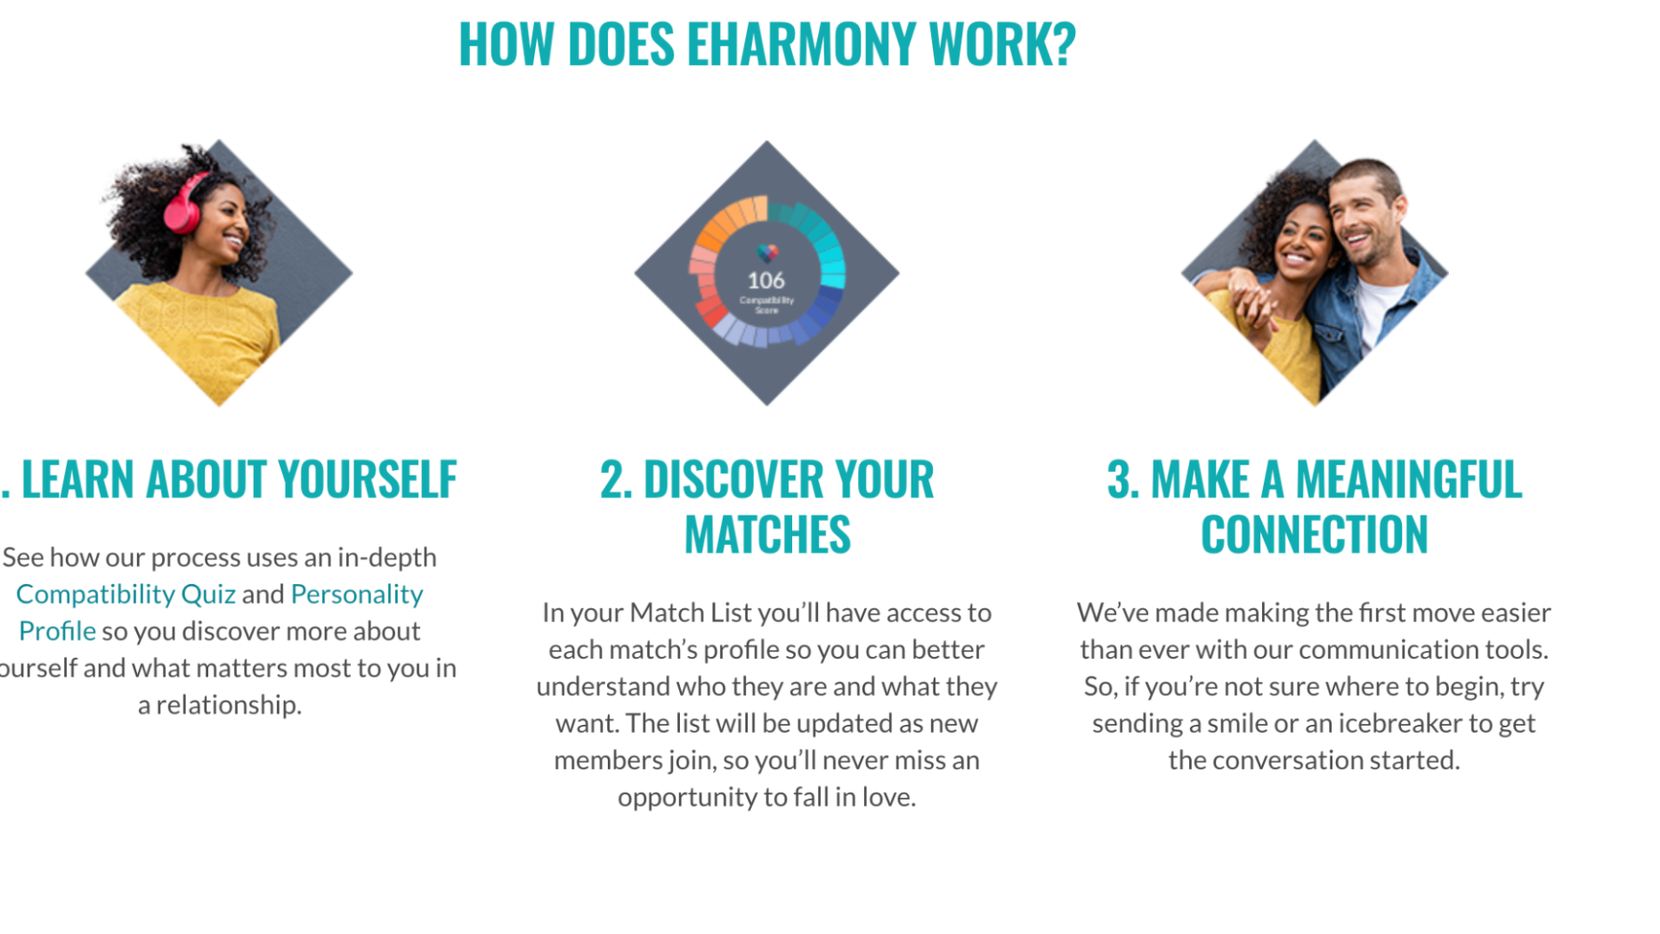 eharmony profile